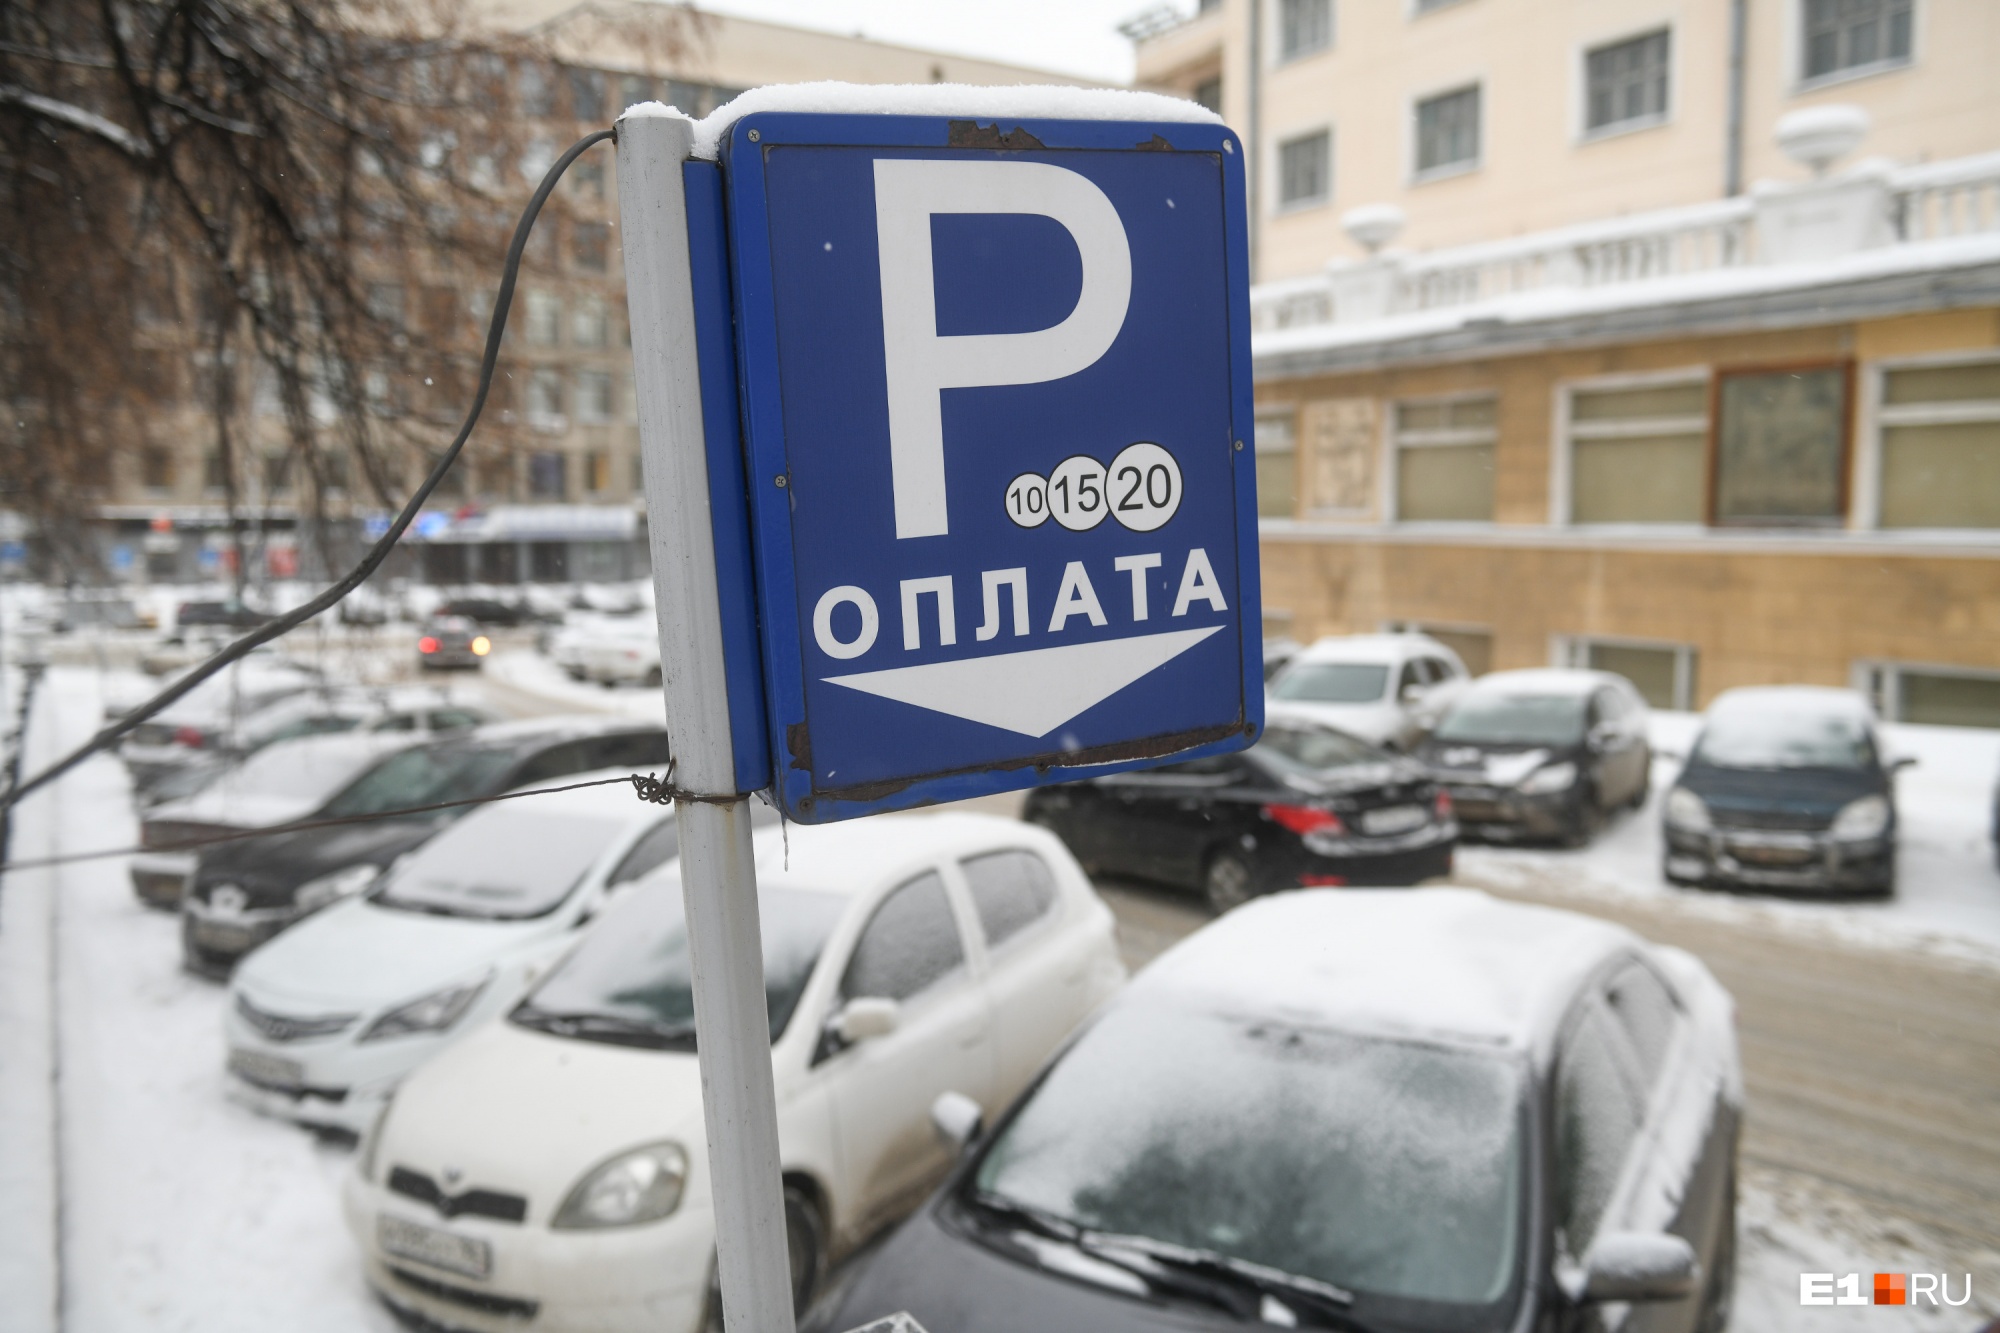 В Екатеринбурге предложили ликвидировать все бесплатные парковки